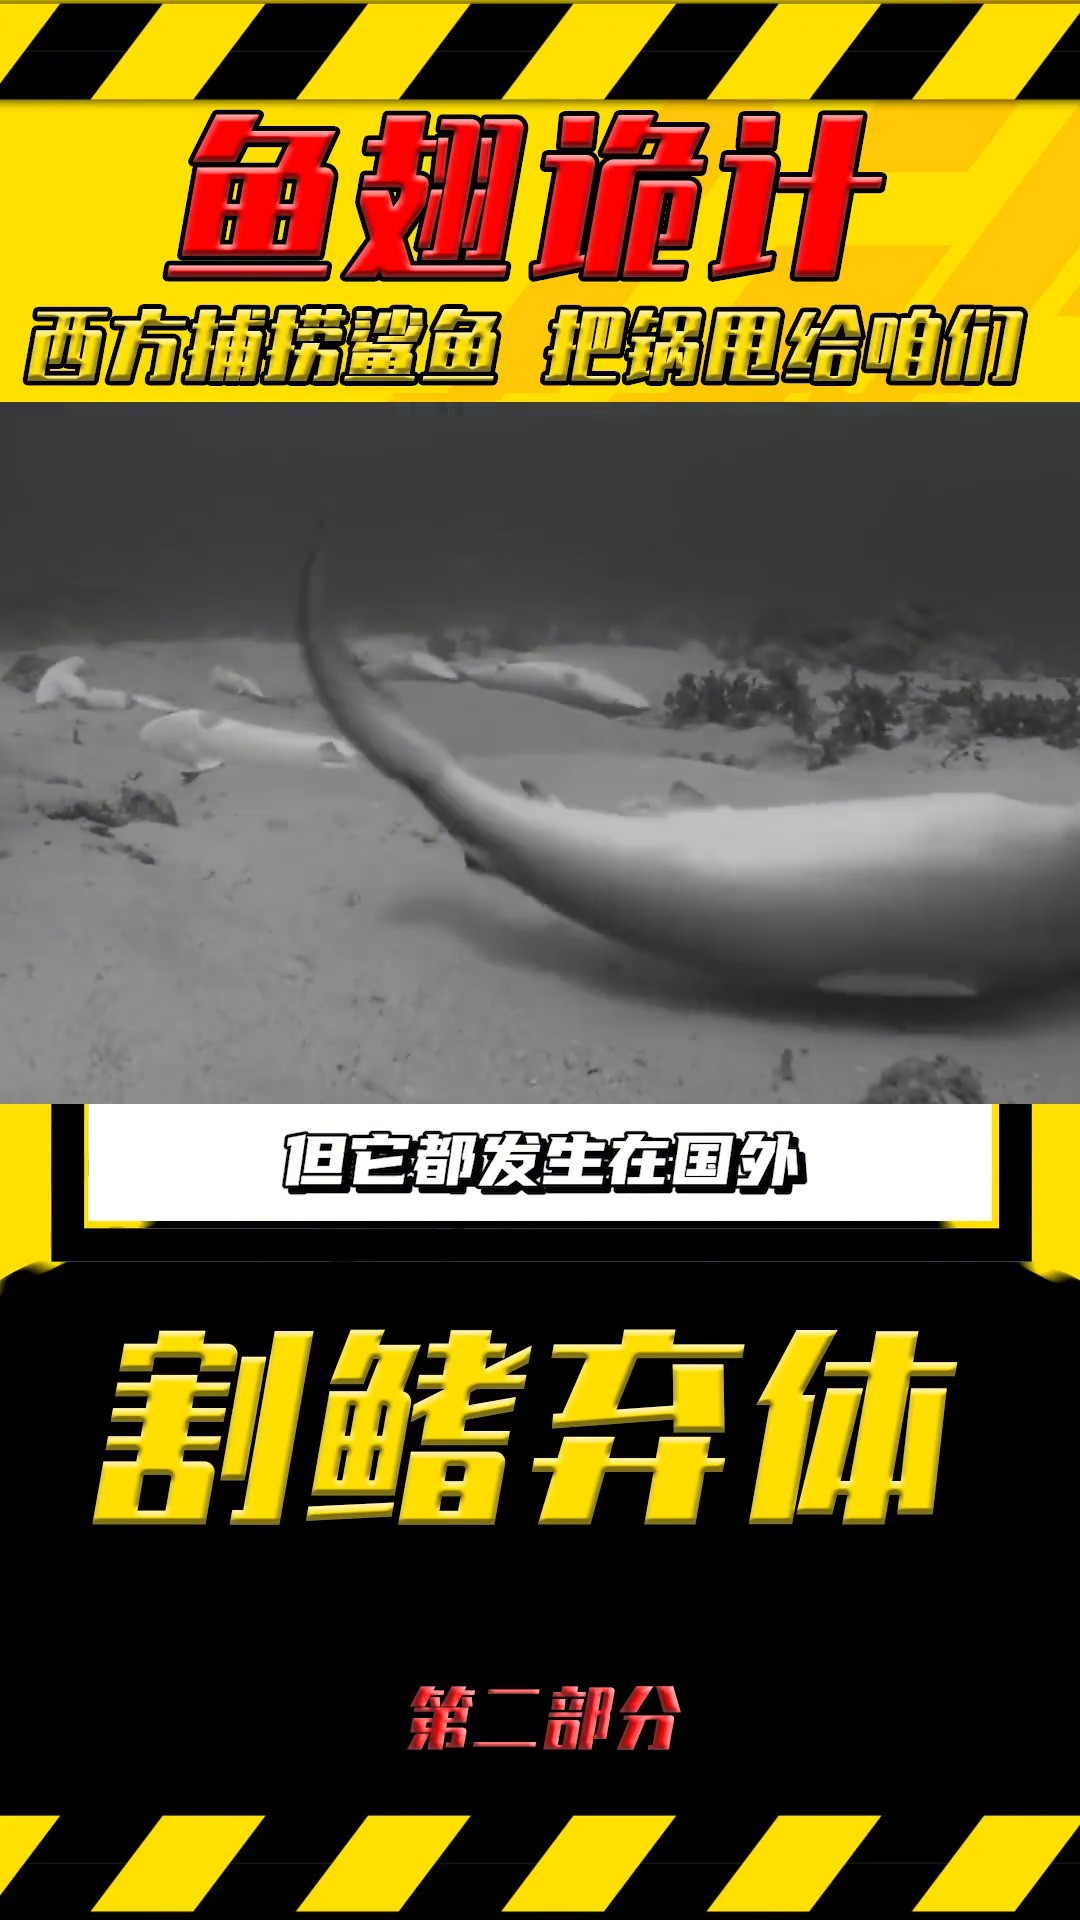 为了蚕食鲨鱼资源，竟把锅甩给咱中国？鱼翅鲨鱼 (2)